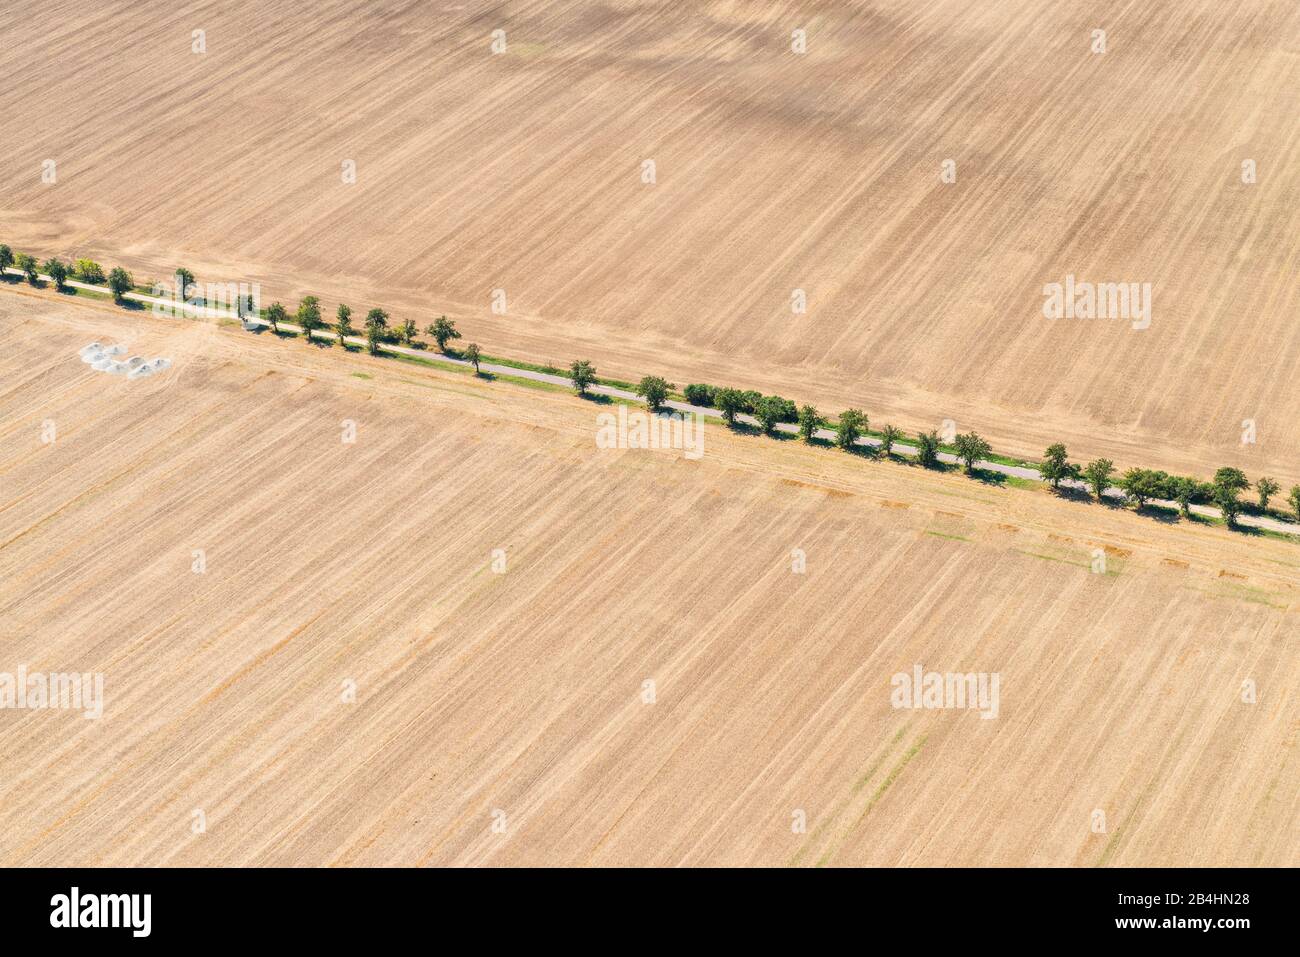 Luftaufnahme von abgeernteten Getreidefeldern, Landstraße mit Baumallee Stock Photo